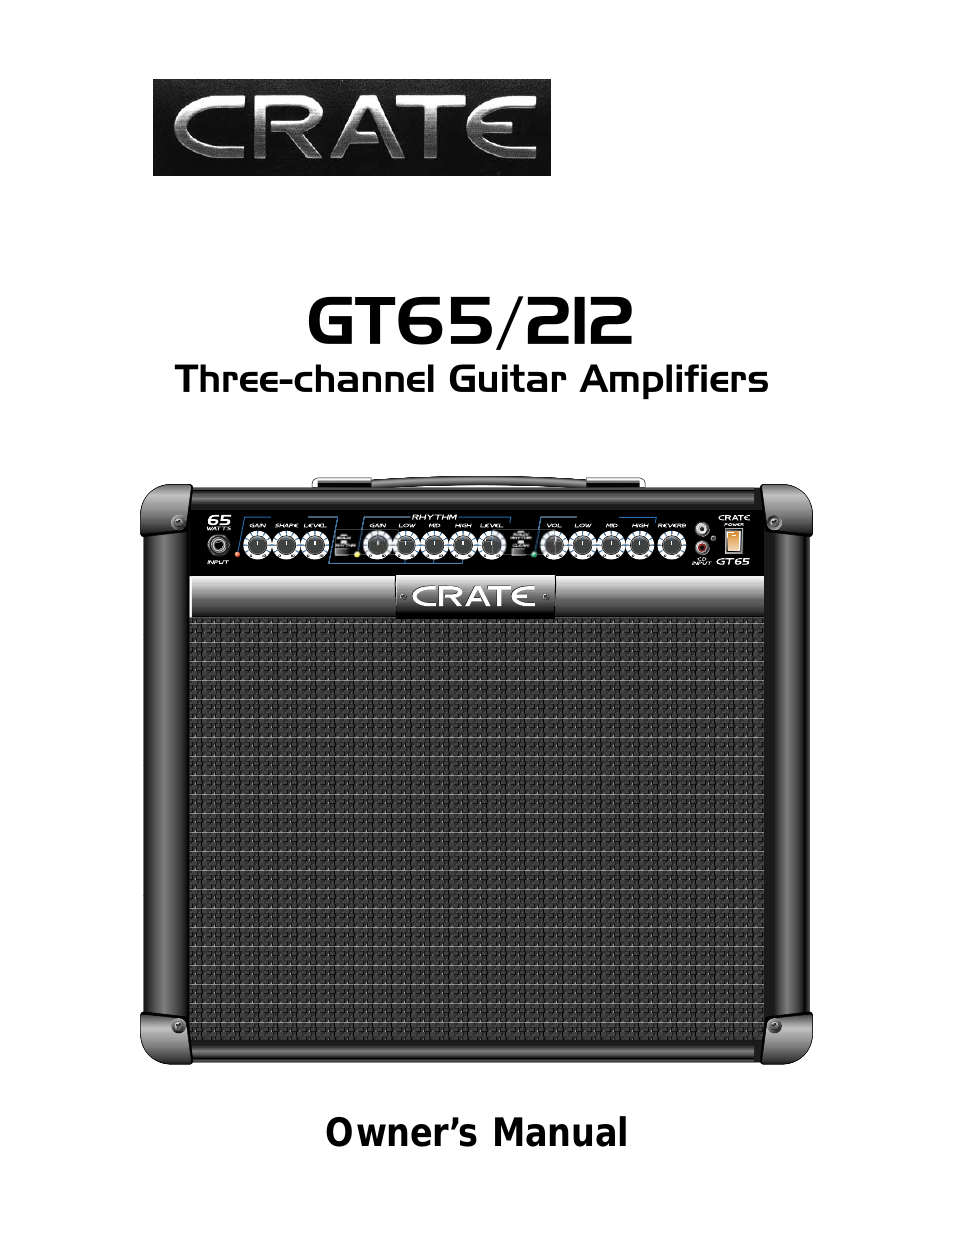 GT65/212